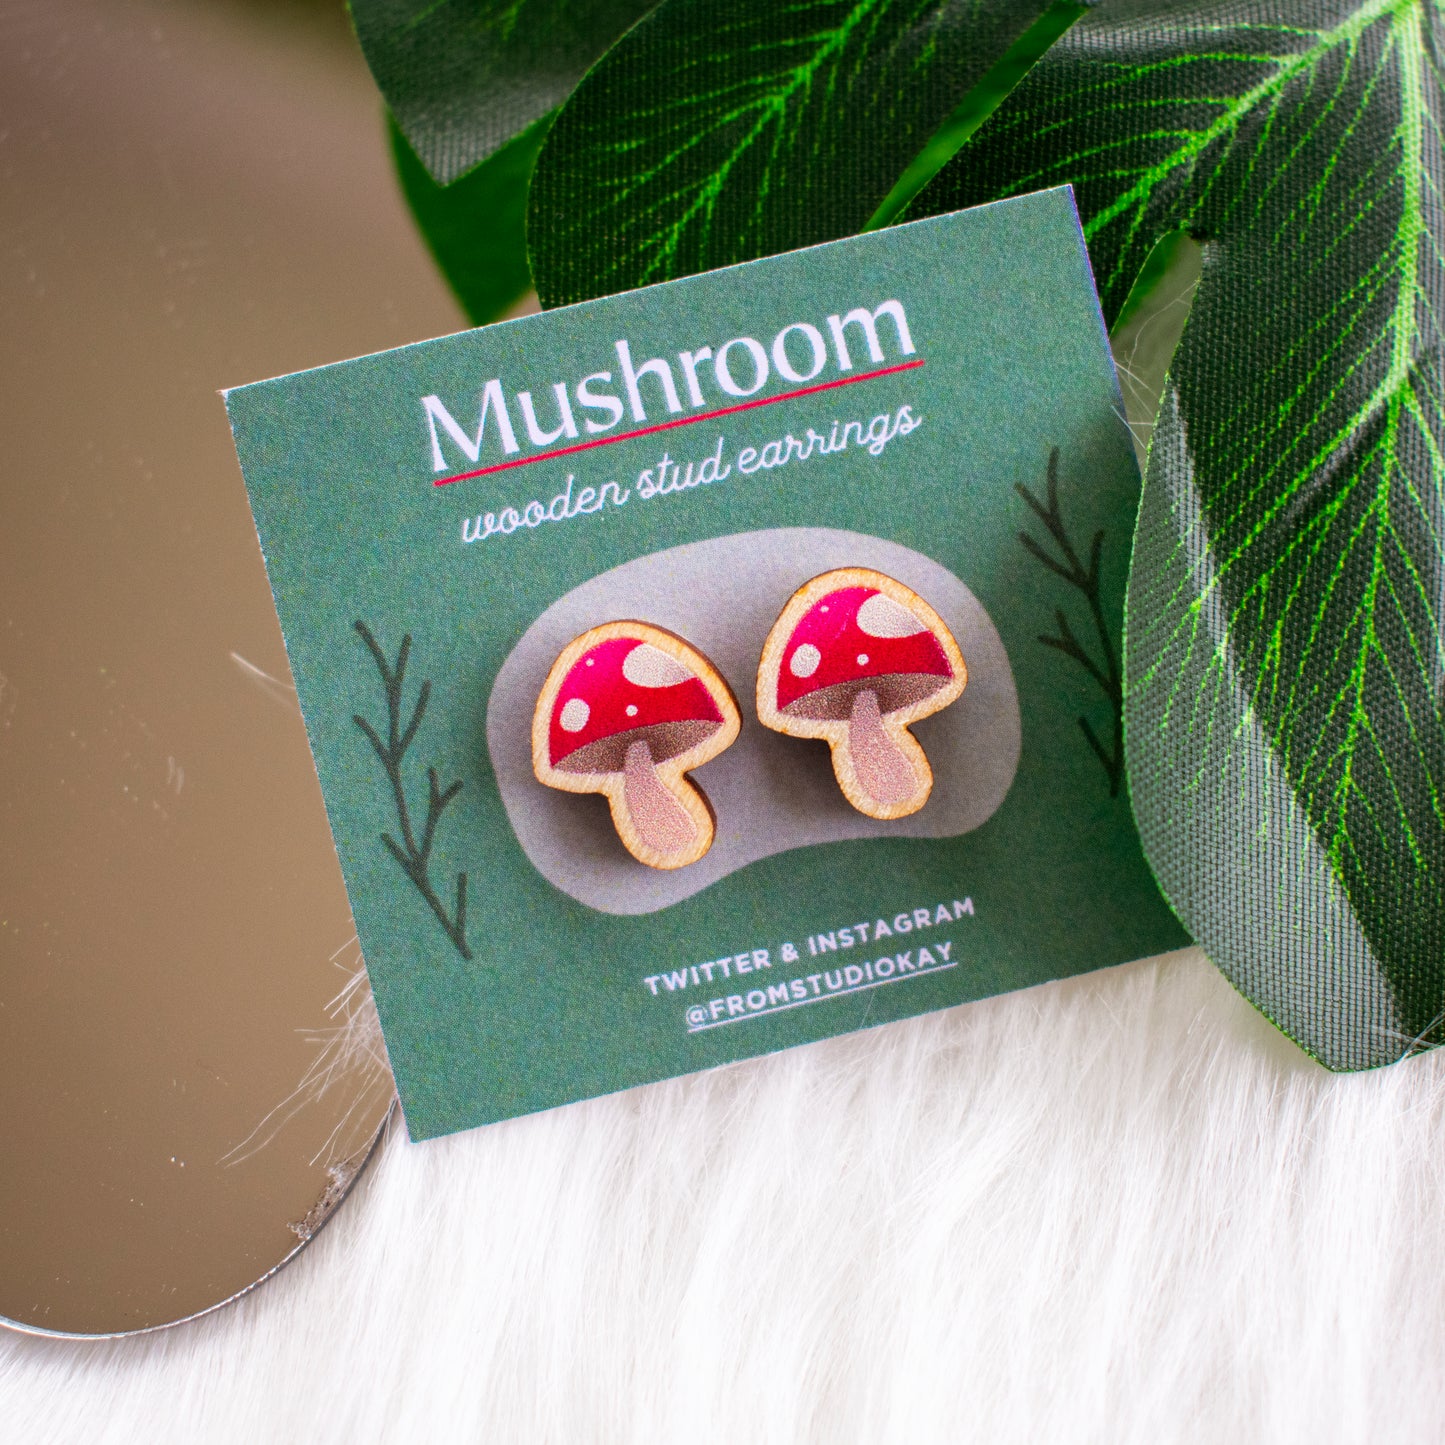 Mushroom wooden stud earrings